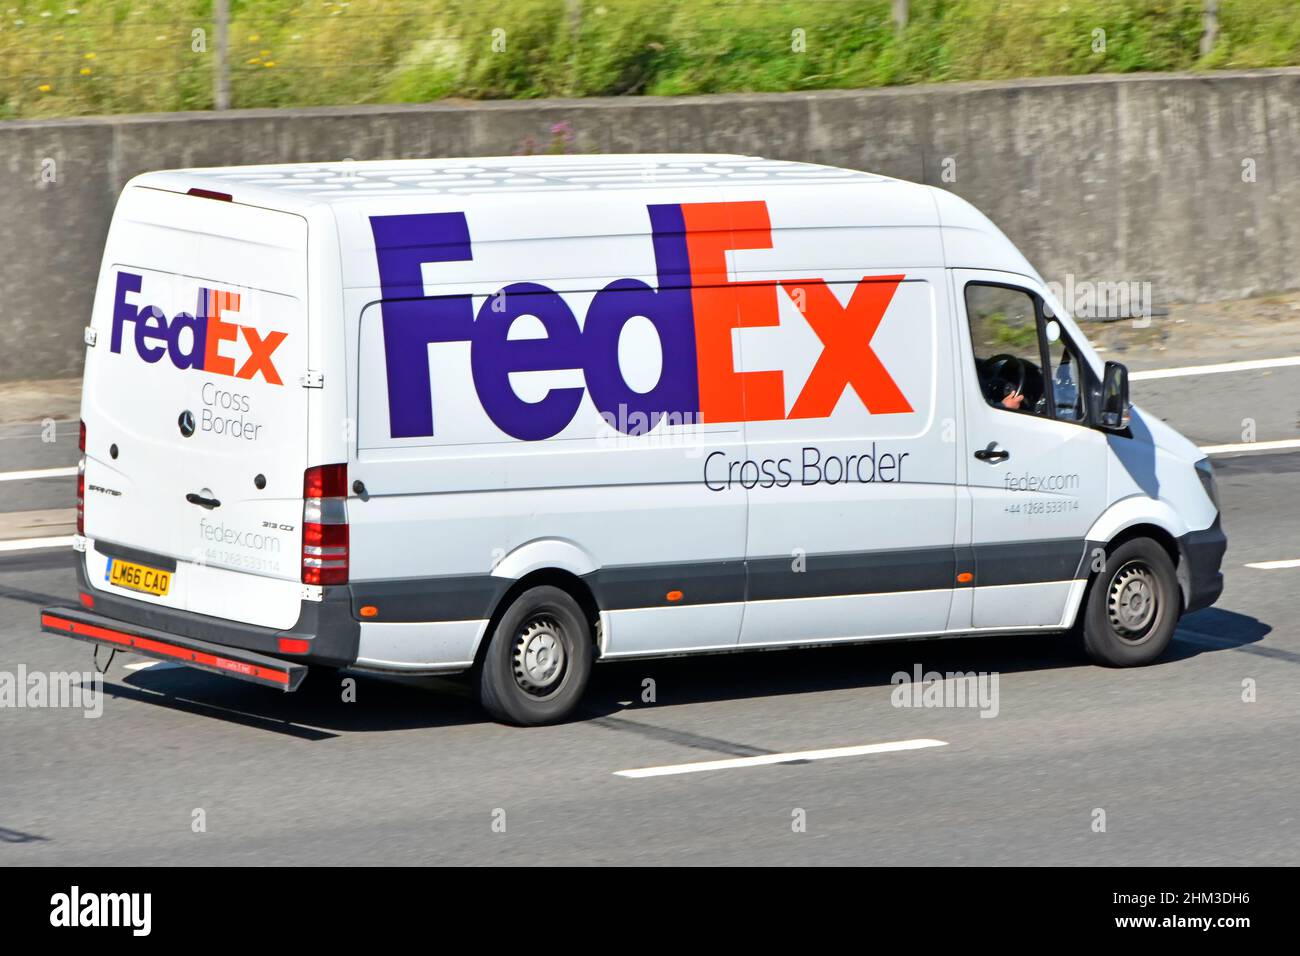 Logo d'entreprise FedEx rouge et bleu sur la vue arrière latérale du camion et du chauffeur de la chaîne d'approvisionnement de livraison de colis transfrontaliers qui empruntons la route d'autoroute du Royaume-Uni Banque D'Images